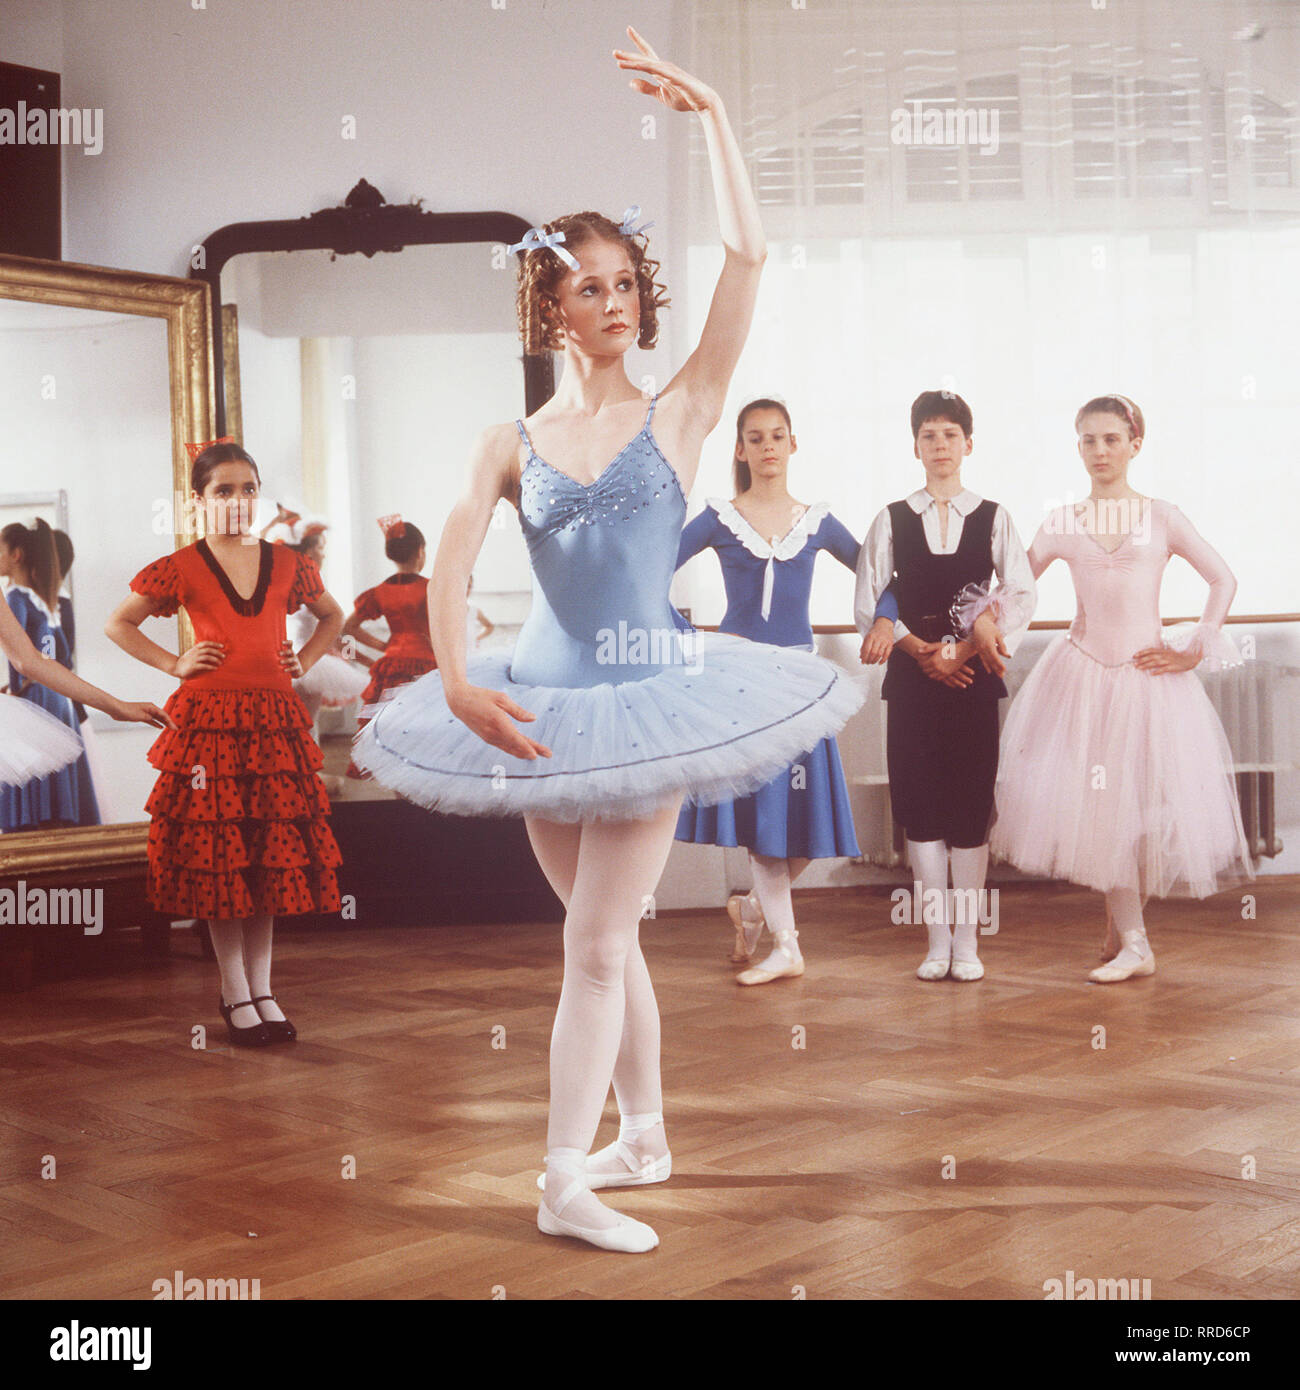 ANNA / TV-Serie von 1987 - Regie Frank Strecker / 1. Folge / Die Schülerin Anna (SILVIA SEIDEL, in einer Szene) hat eine große Begabung zur Ballett-Tänzerin. Doch dann wird sie bei einem Unfall so verletzt, daß sie Arme und Beine nicht mehr bewegen kann. / 28929 / , 09DFAAnna1 / Überschrift: ANNA Stock Photo